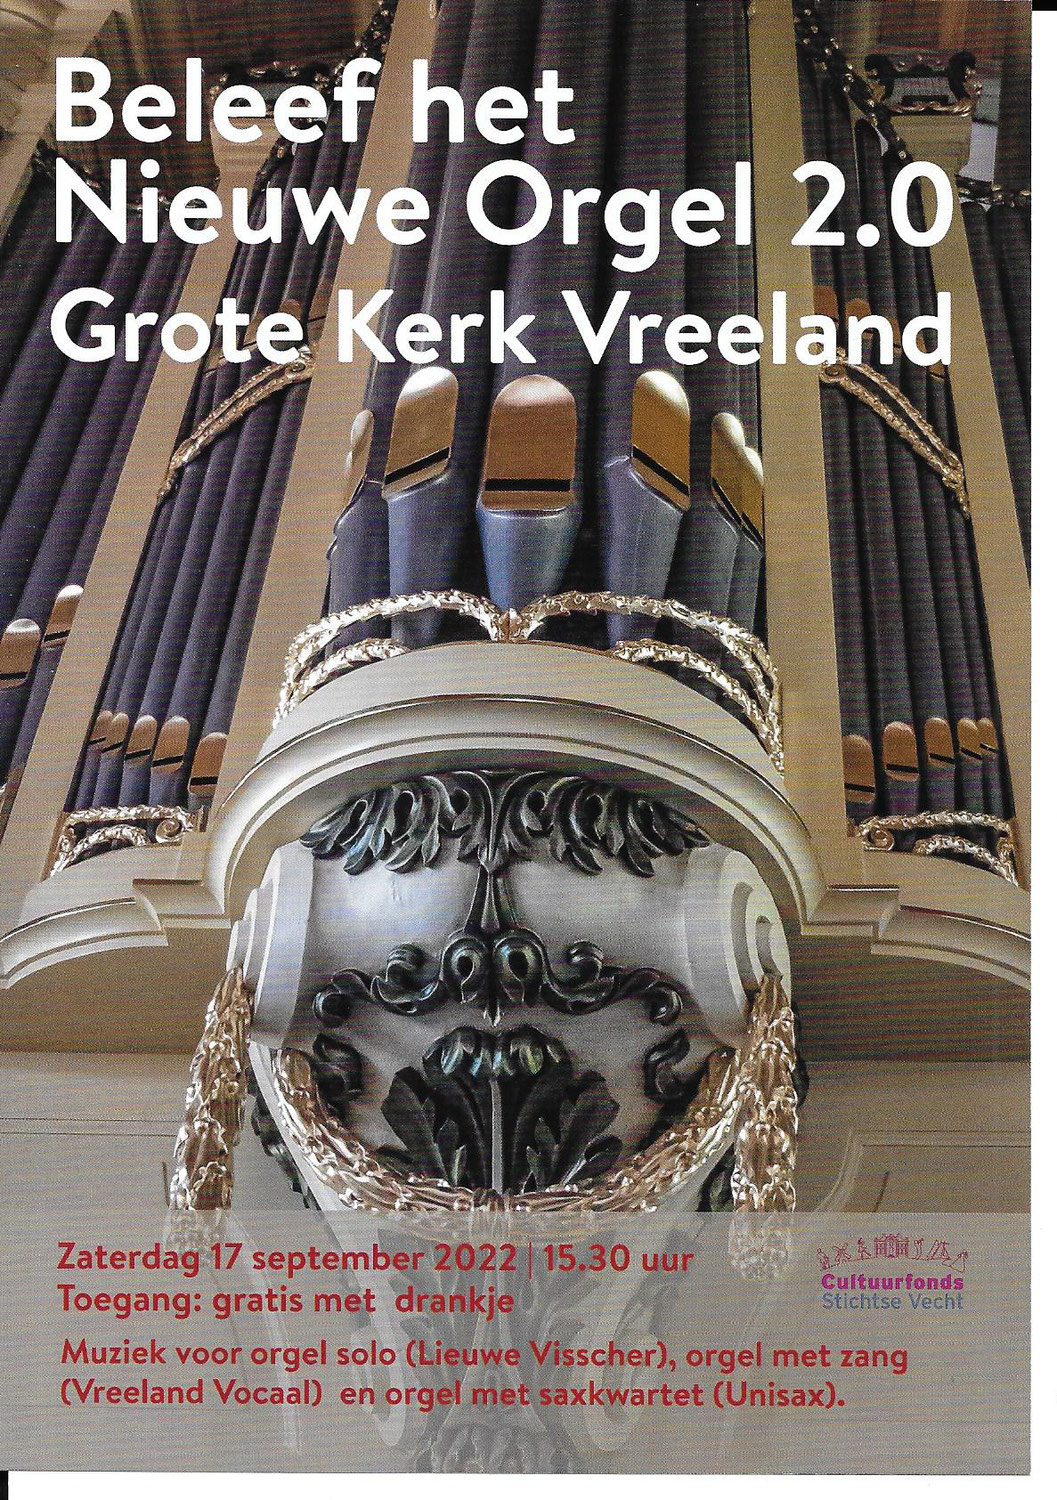 Beleef het Nieuwe Orgel 2.0 in de Grote Kerk Vreeland, o.a. mmv Vreeland Vocaal